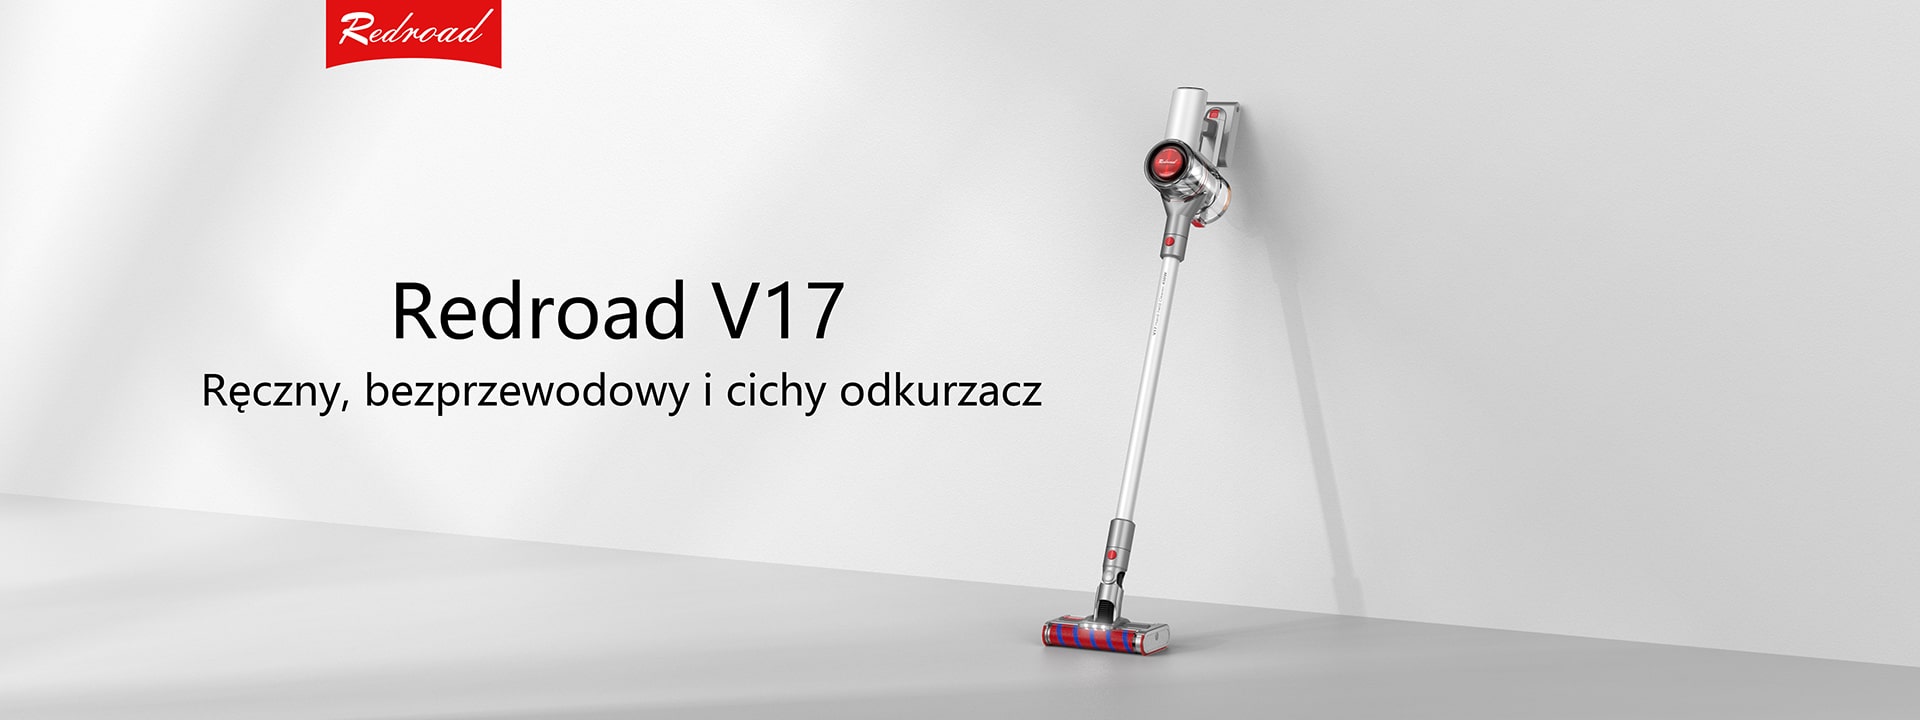 RedRoad V17, czyli wszechstronny odkurzacz do porządnego sprzątania